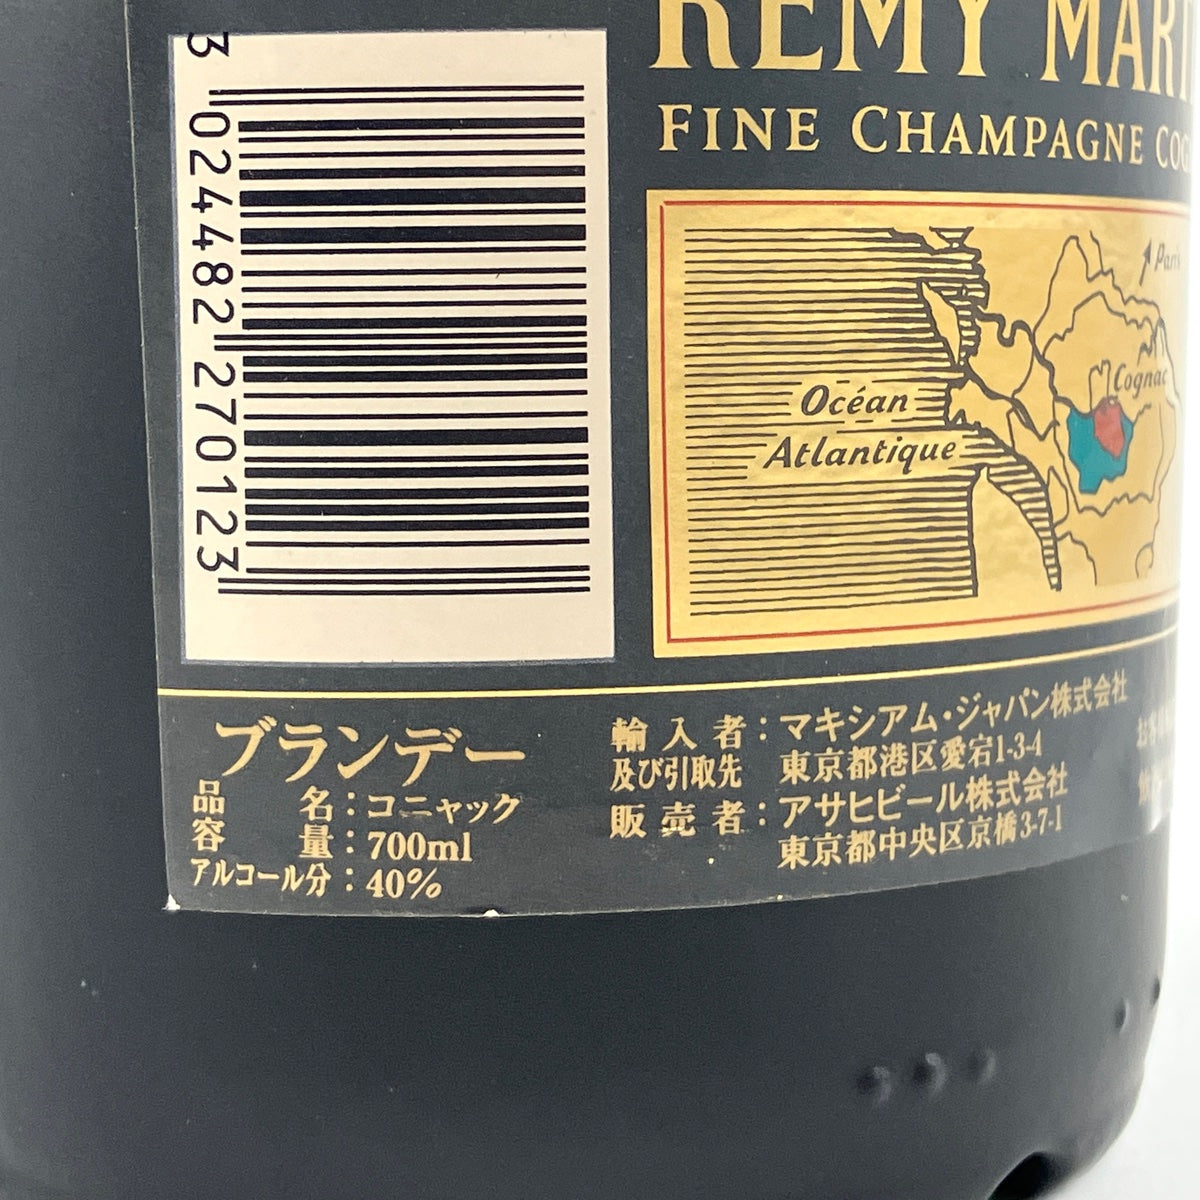 3本 レミーマルタン ヘネシー ジャノー コニャック アルマニャック ブランデー セット 【古酒】